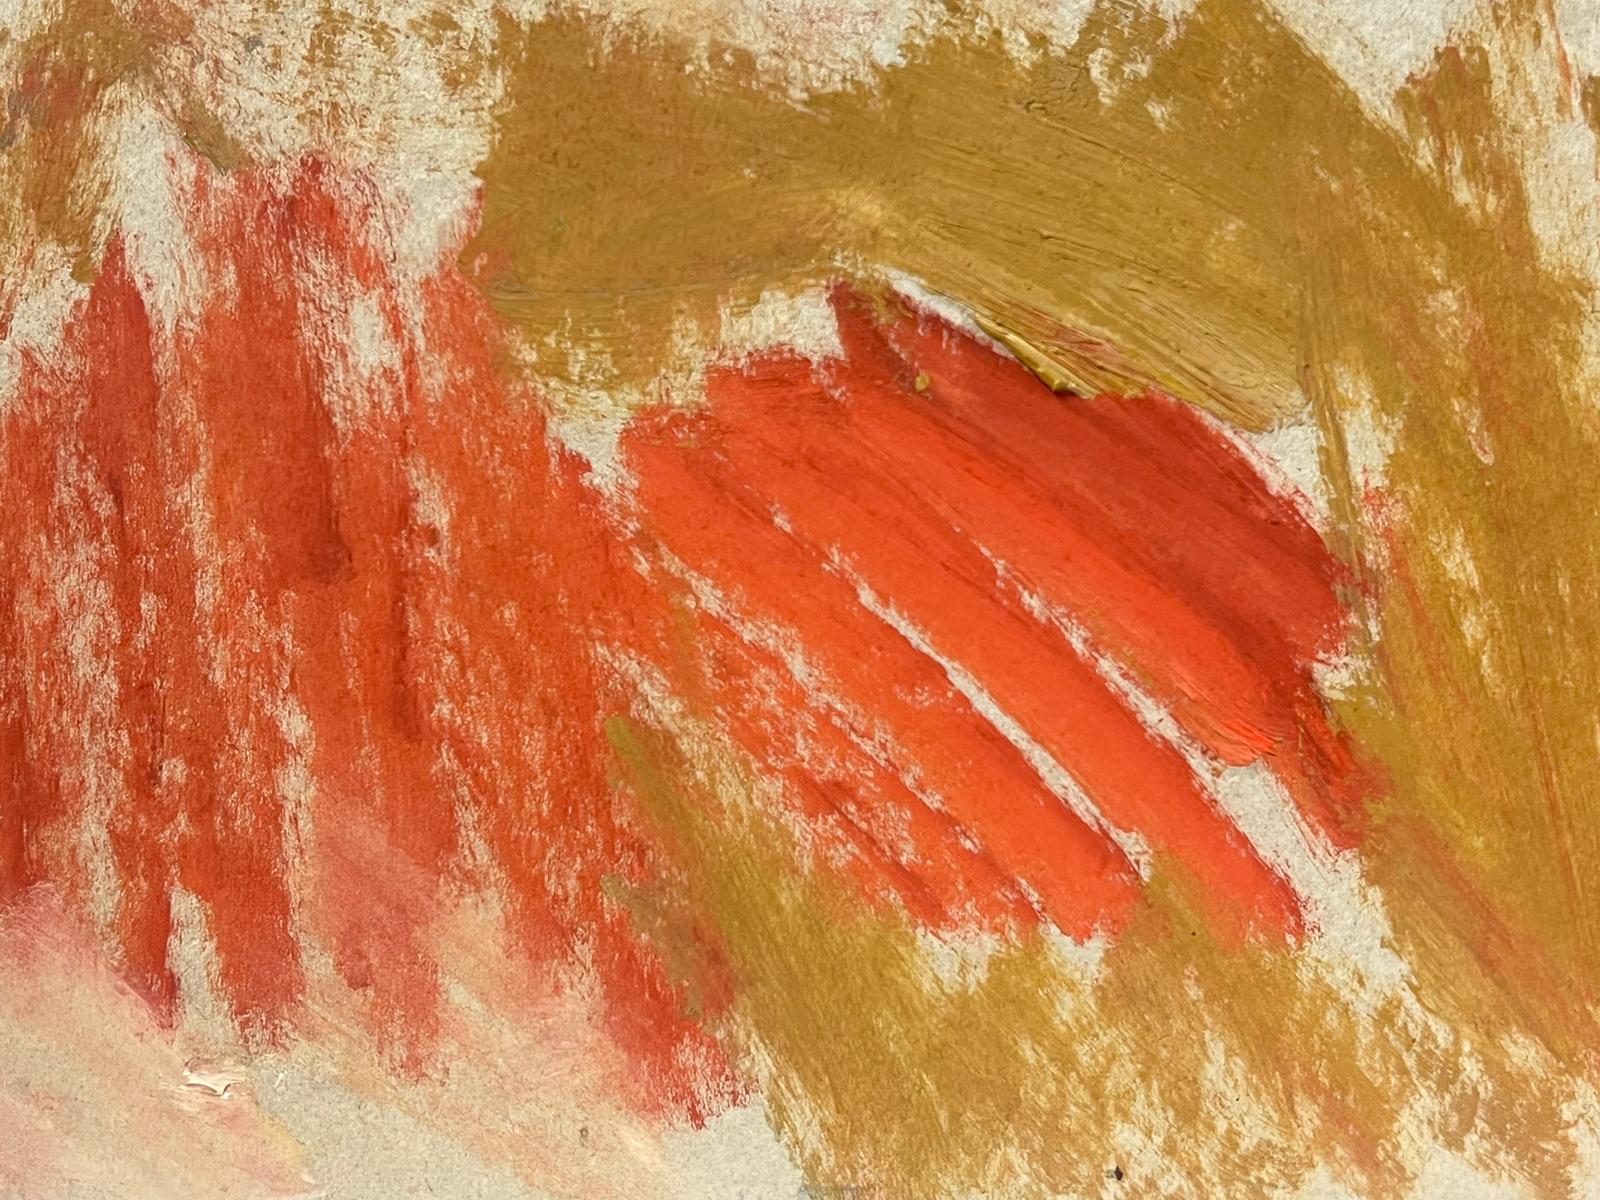 Deutsches modernistisches Ölgemälde des 20. Jahrhunderts, Orange und Rot, Abstrakt – Painting von Elisabeth Hahn